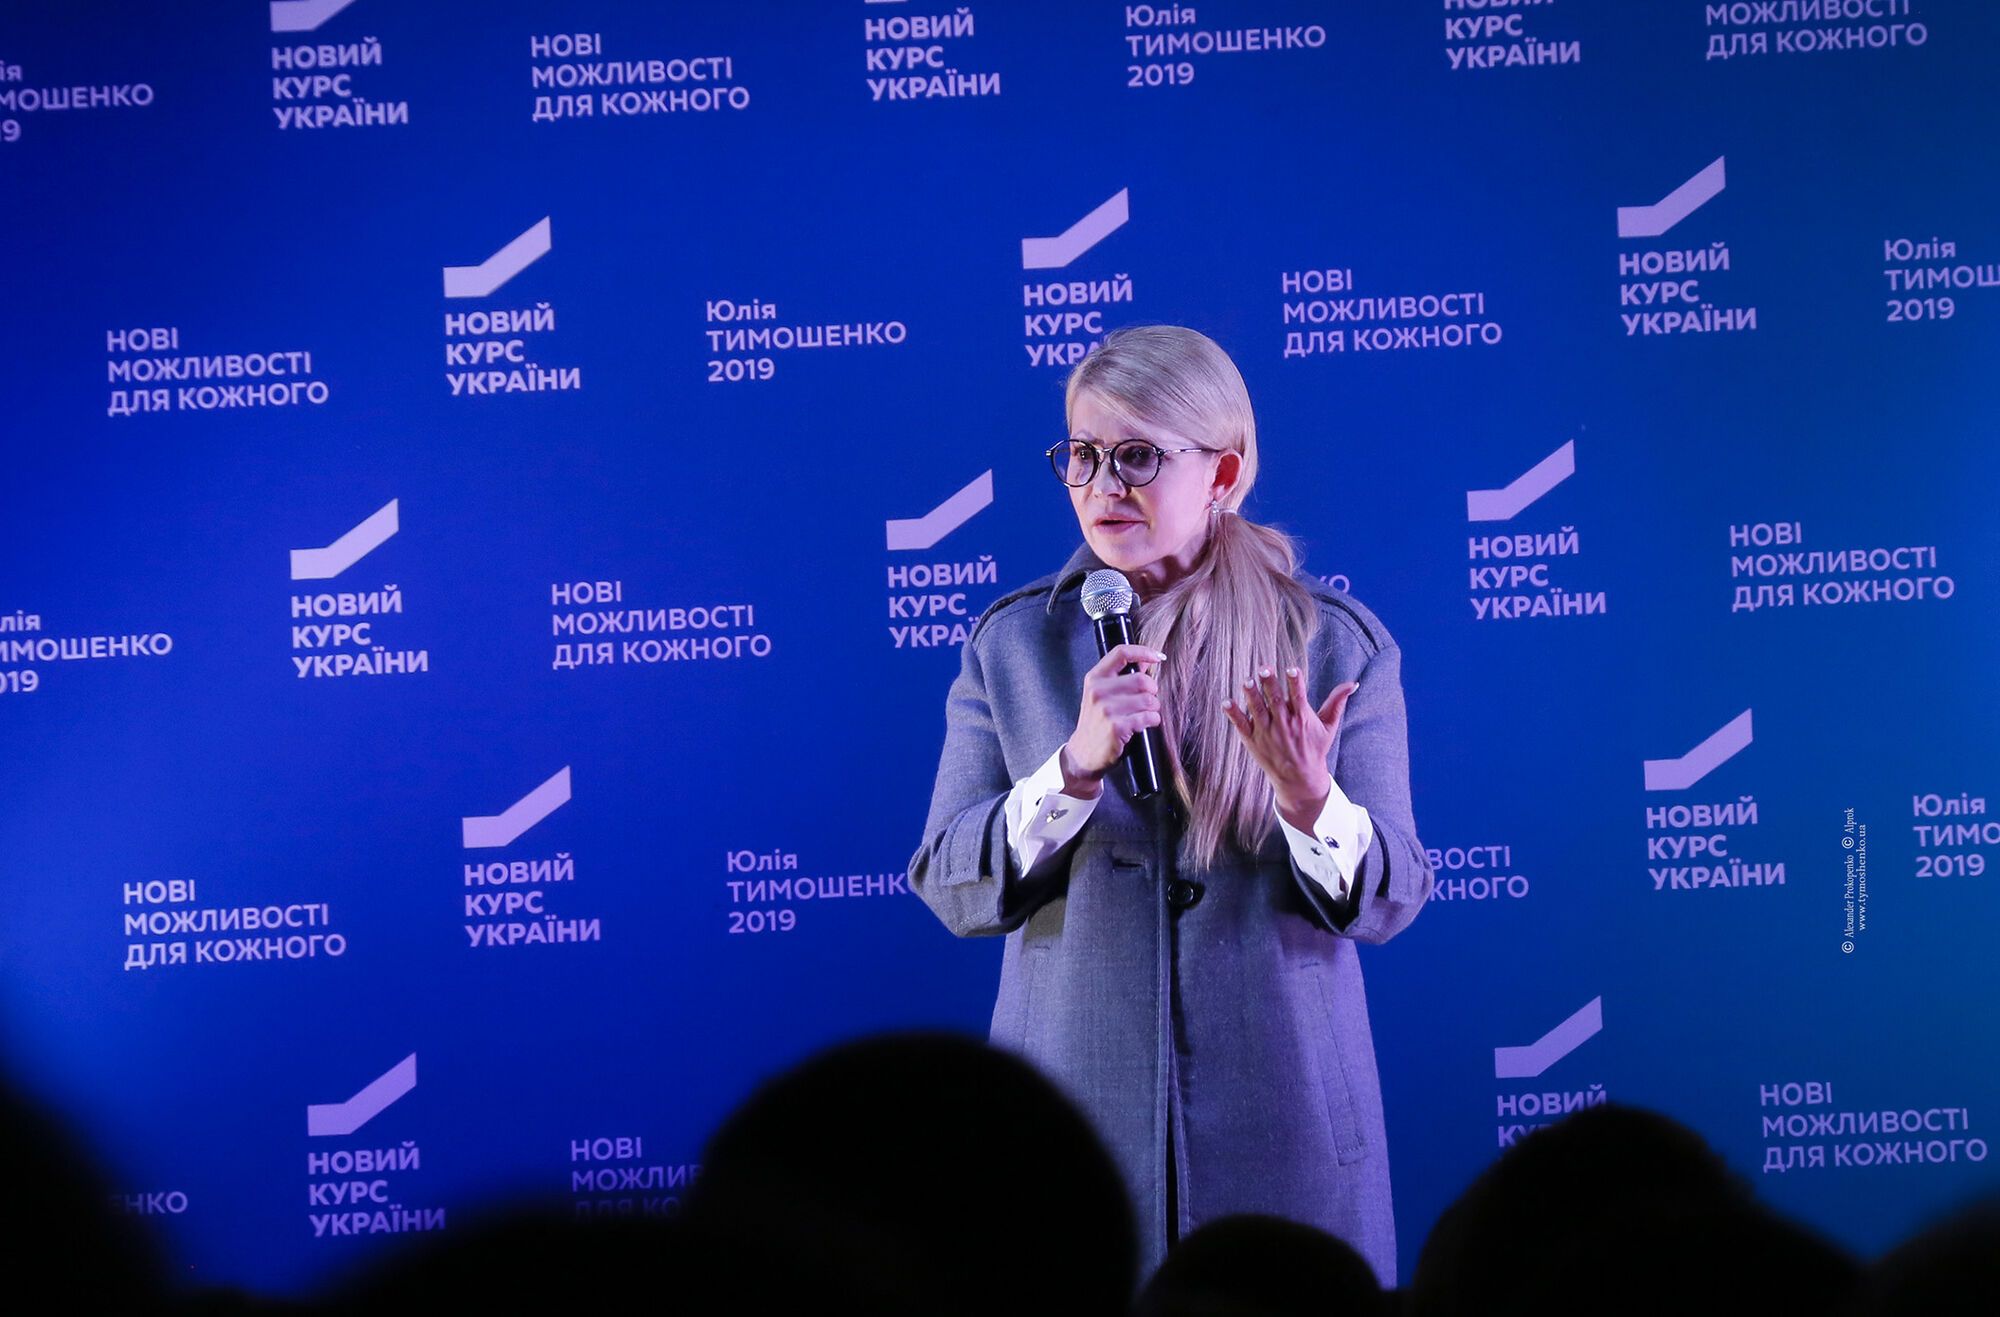 Тимошенко: переговоры в формате "Будапешт плюс" - первый шаг к миру